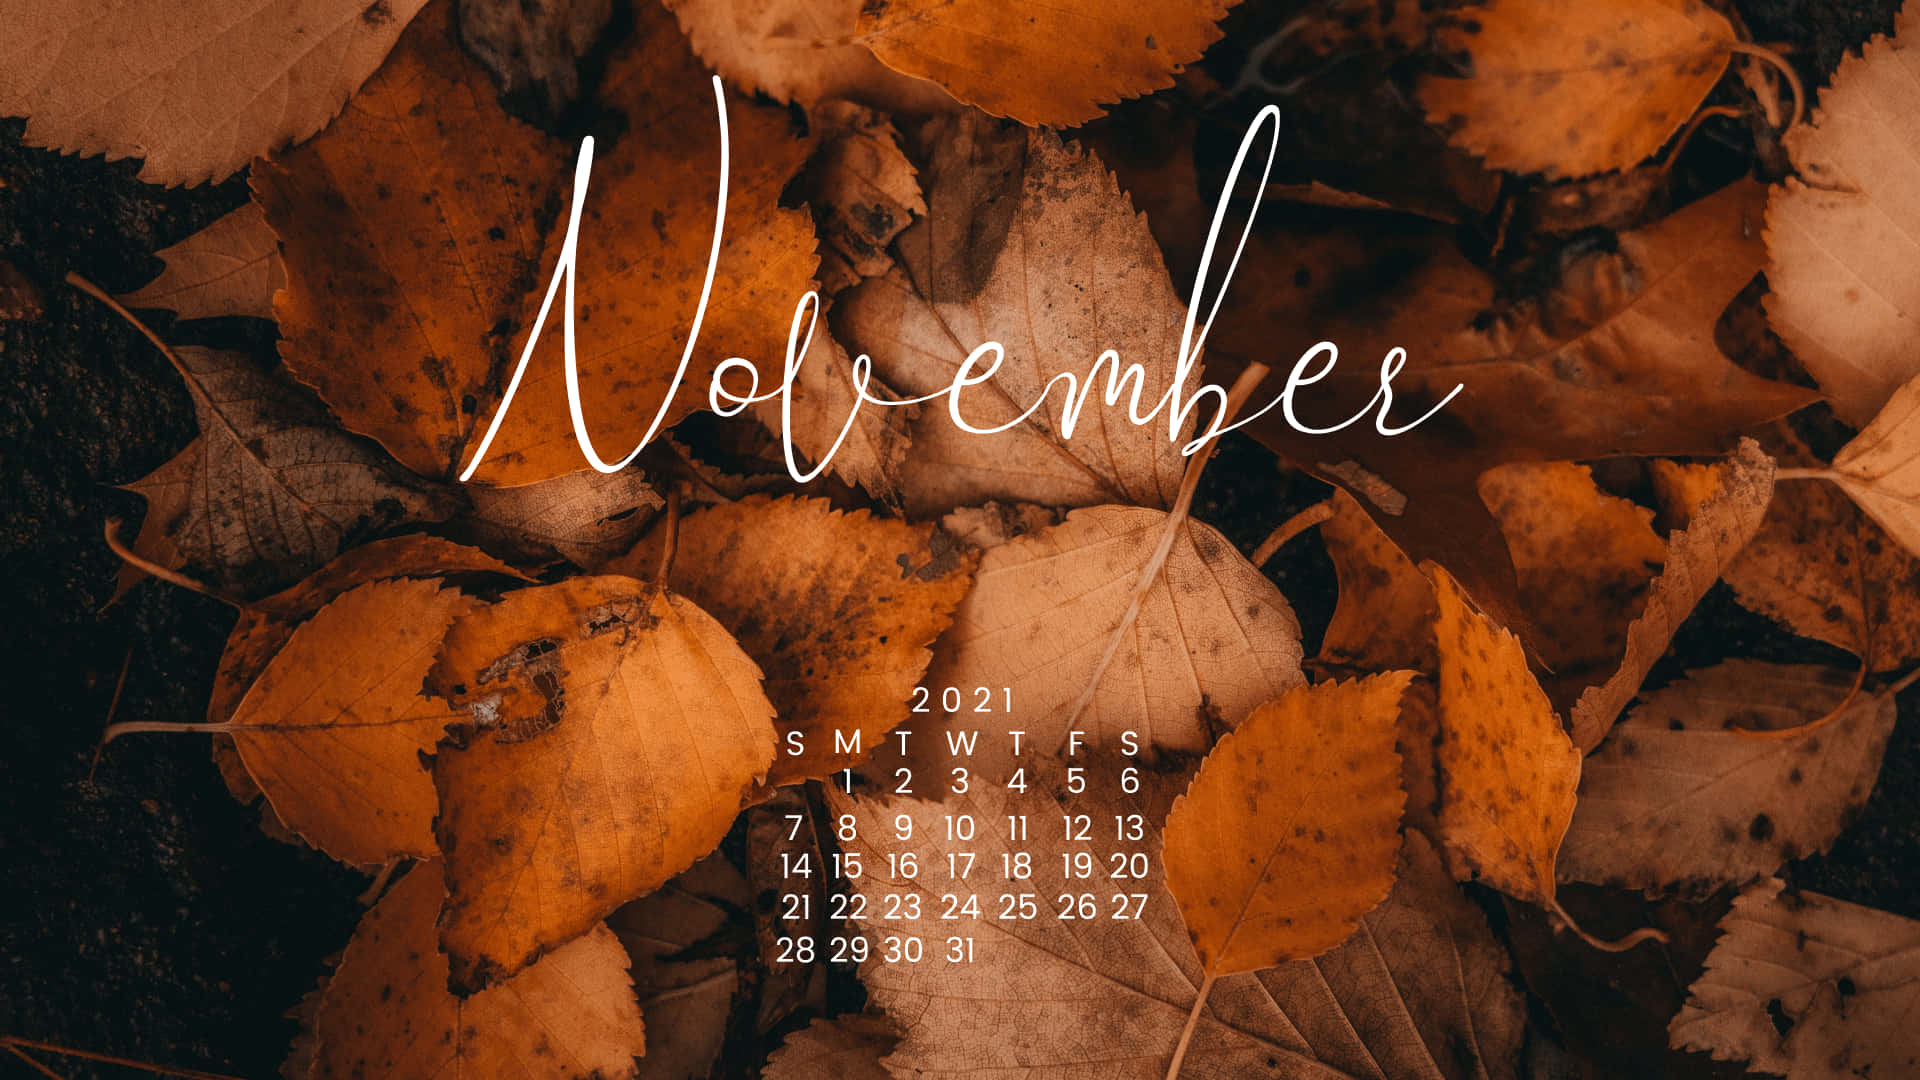 Välkommentill November - En Månad Av Glädje, Givande Och Tacksamhet!